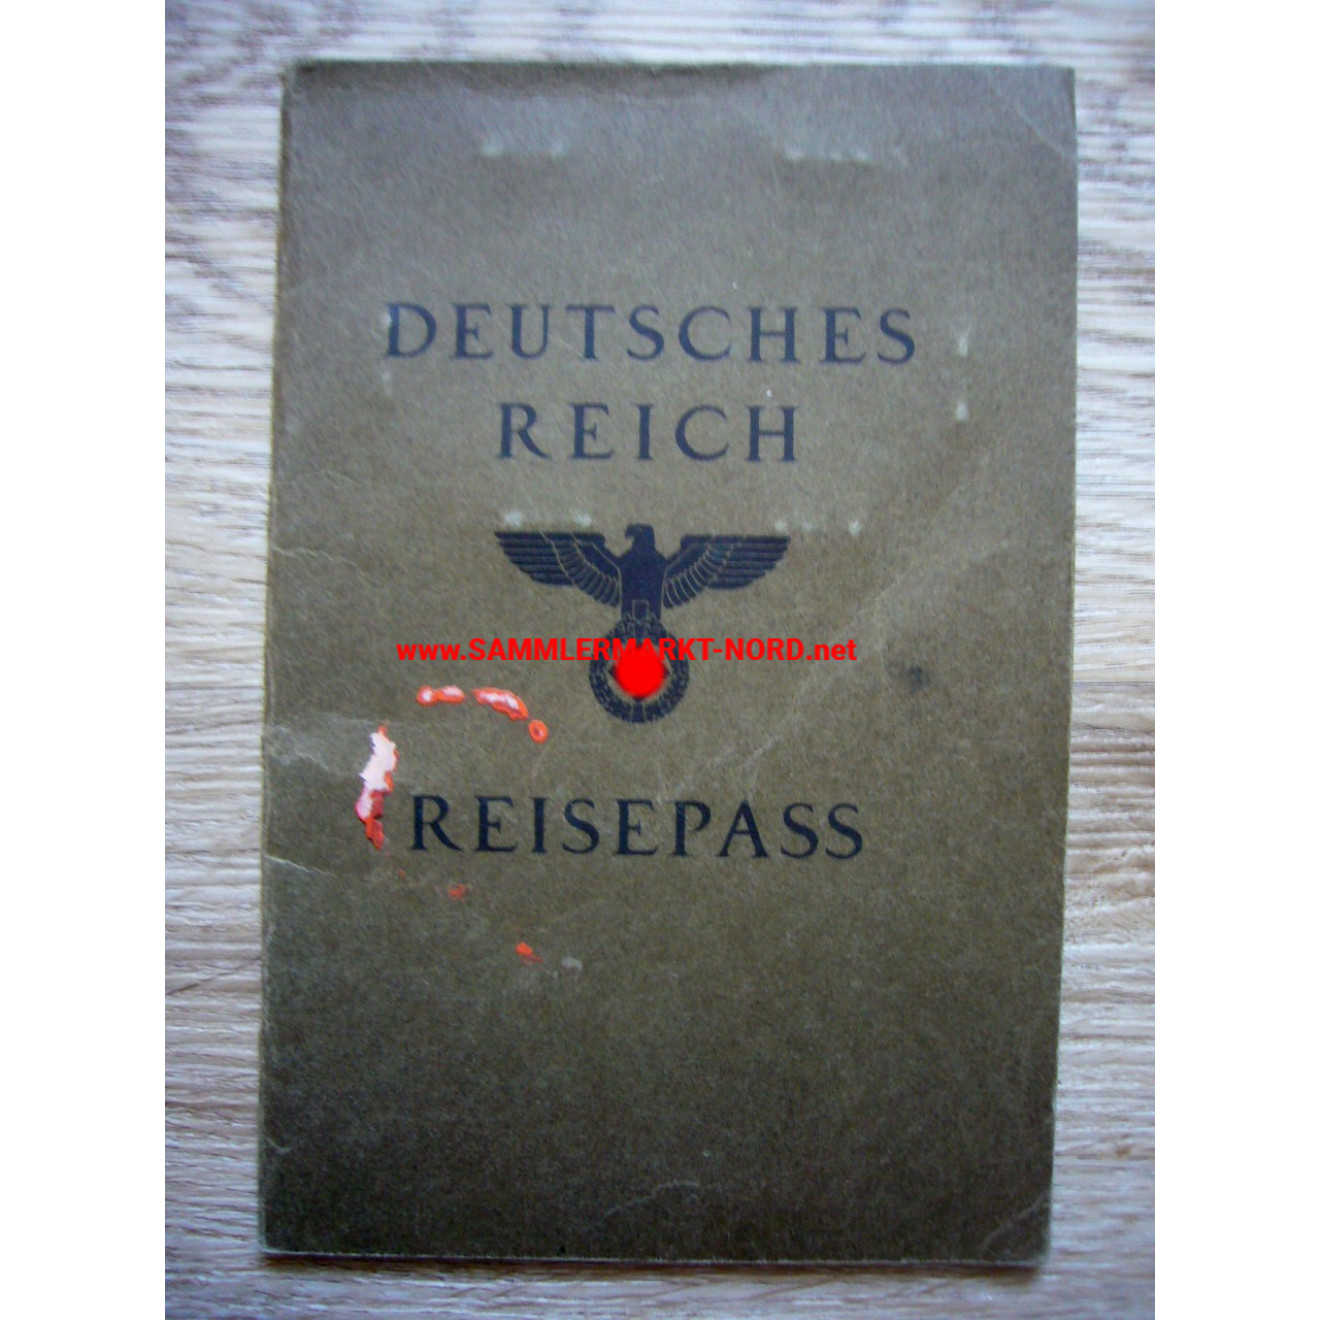 Deutsches Reich - Reisepaß - Bad Oldesloe 1937